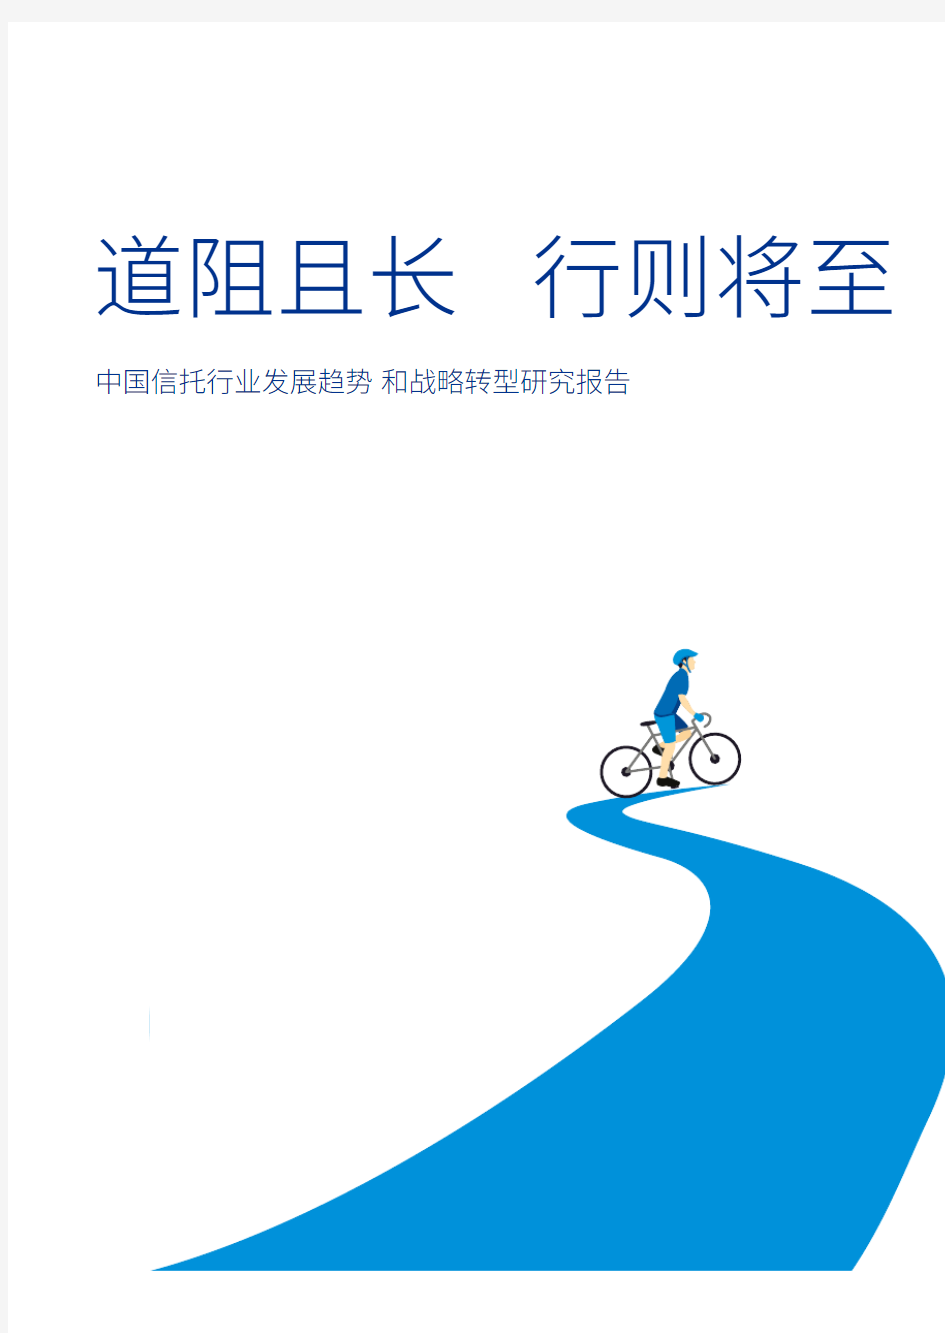 2020-2021年中国信托行业发展趋势和战略转型研究报告